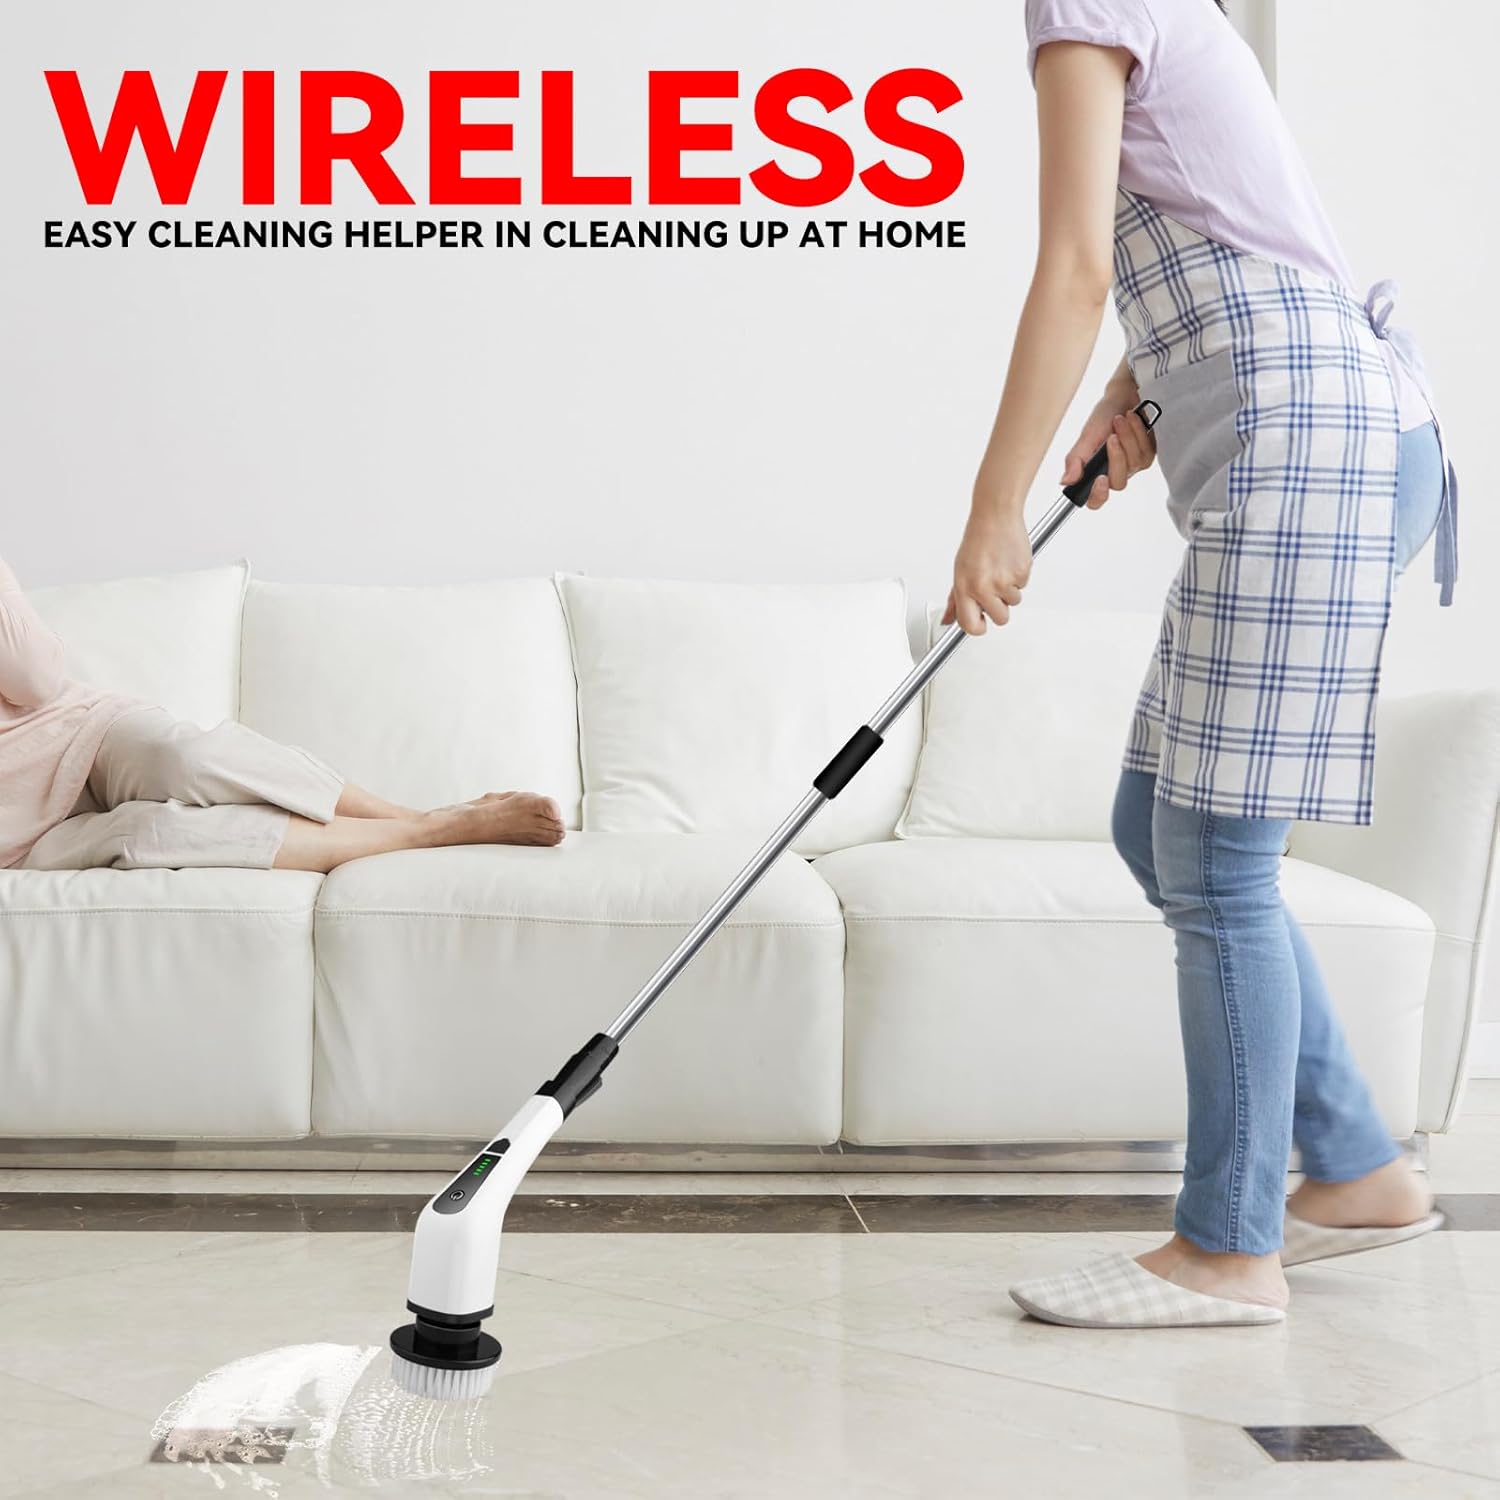 Limpieza del hogar Este limpiador eléctrico y giratorio cepillos para limpiar